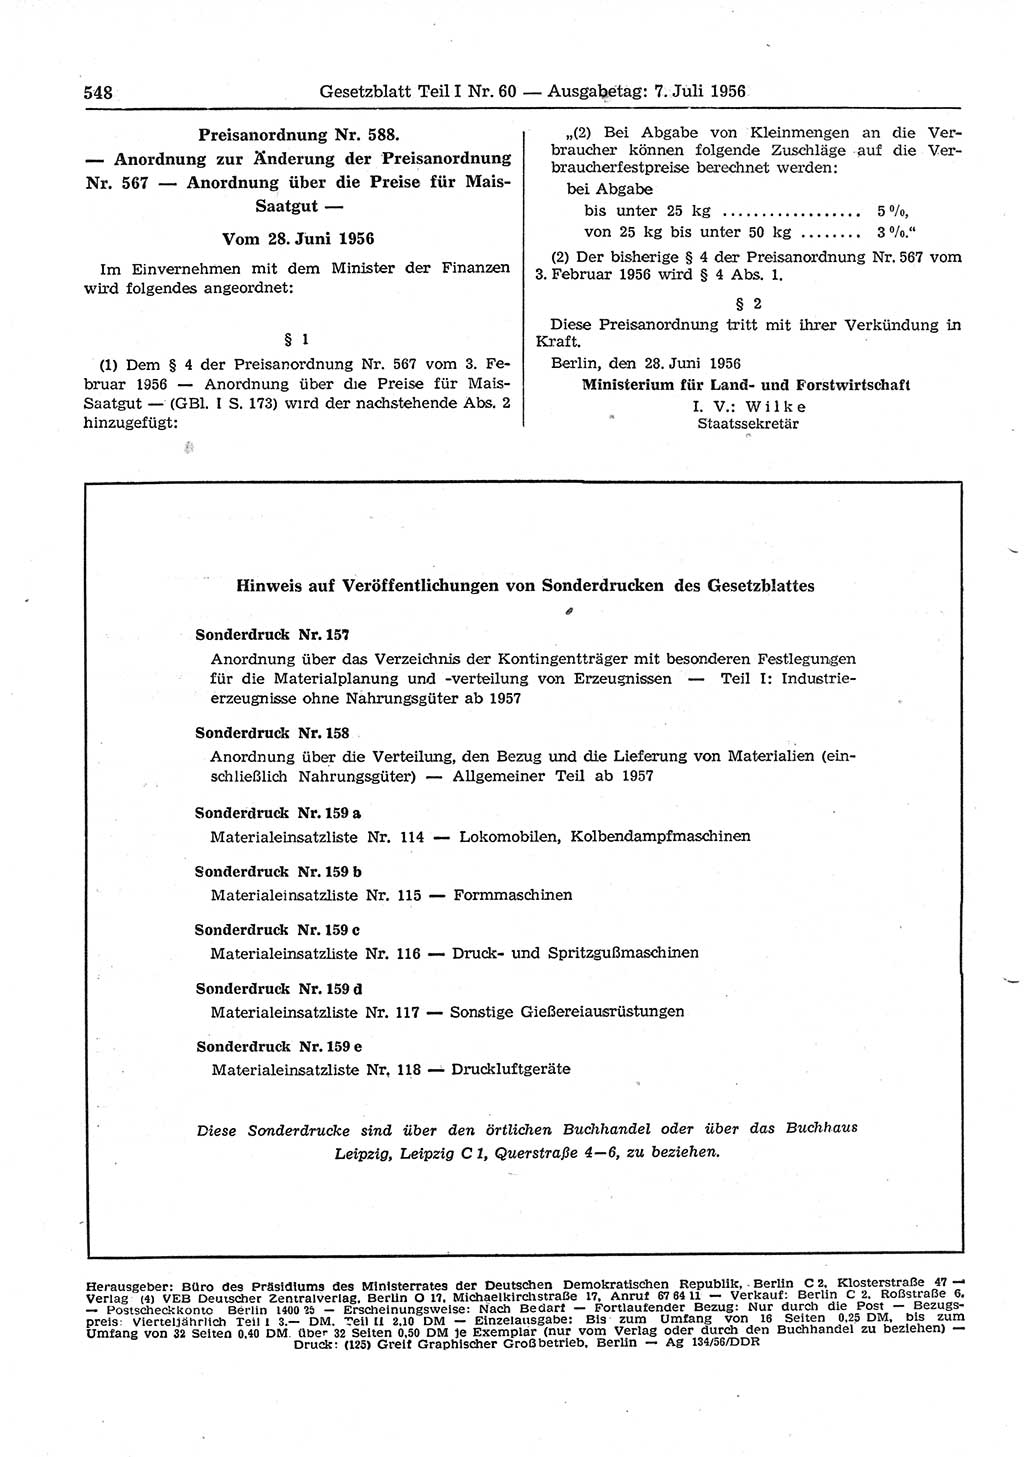 Gesetzblatt (GBl.) der Deutschen Demokratischen Republik (DDR) Teil Ⅰ 1956, Seite 548 (GBl. DDR Ⅰ 1956, S. 548)